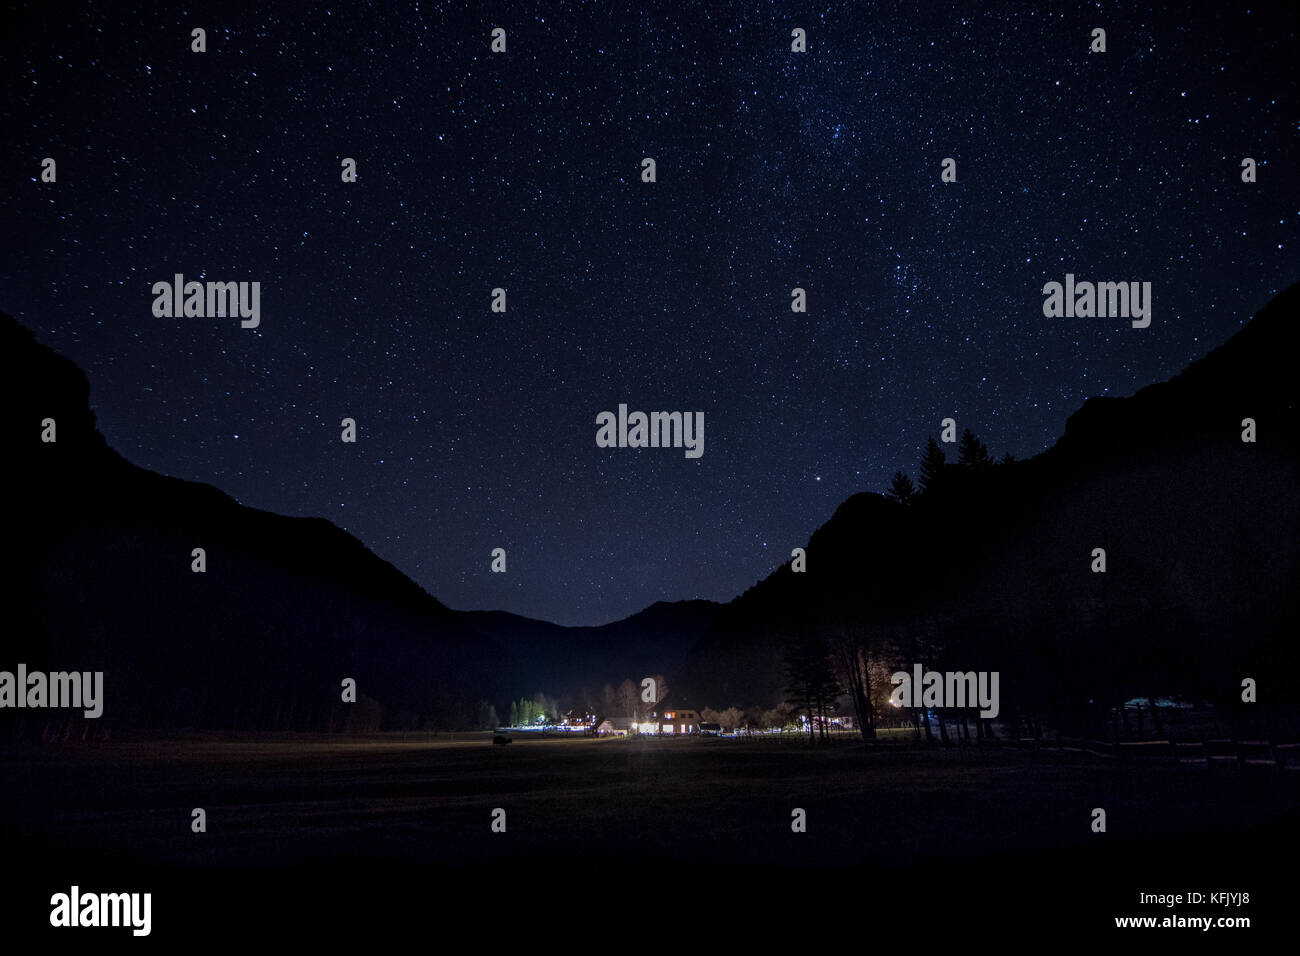 Paesaggio notturno, illuminato Alpine lodge, silhouette di montagna e cielo stellato Foto Stock